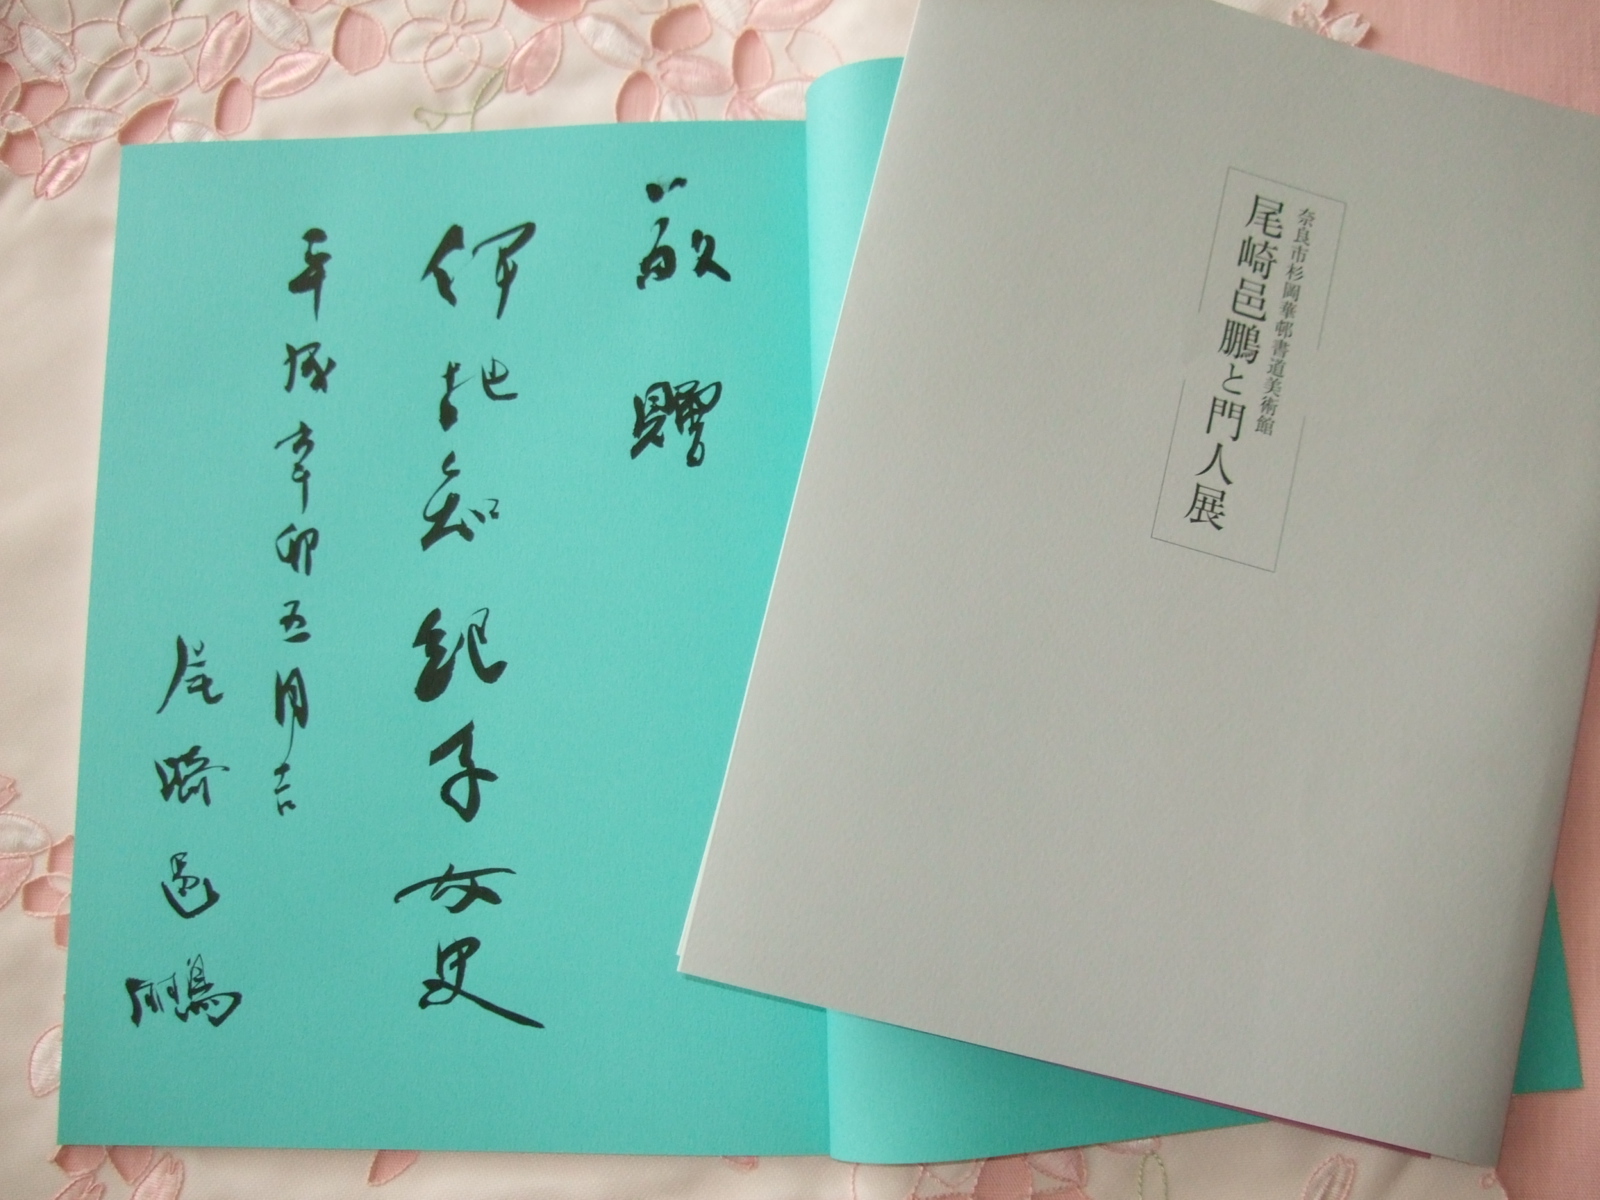 漢字を尾崎邑鵬先生に学ぶ: かなぐらふぃの徒然ブログ